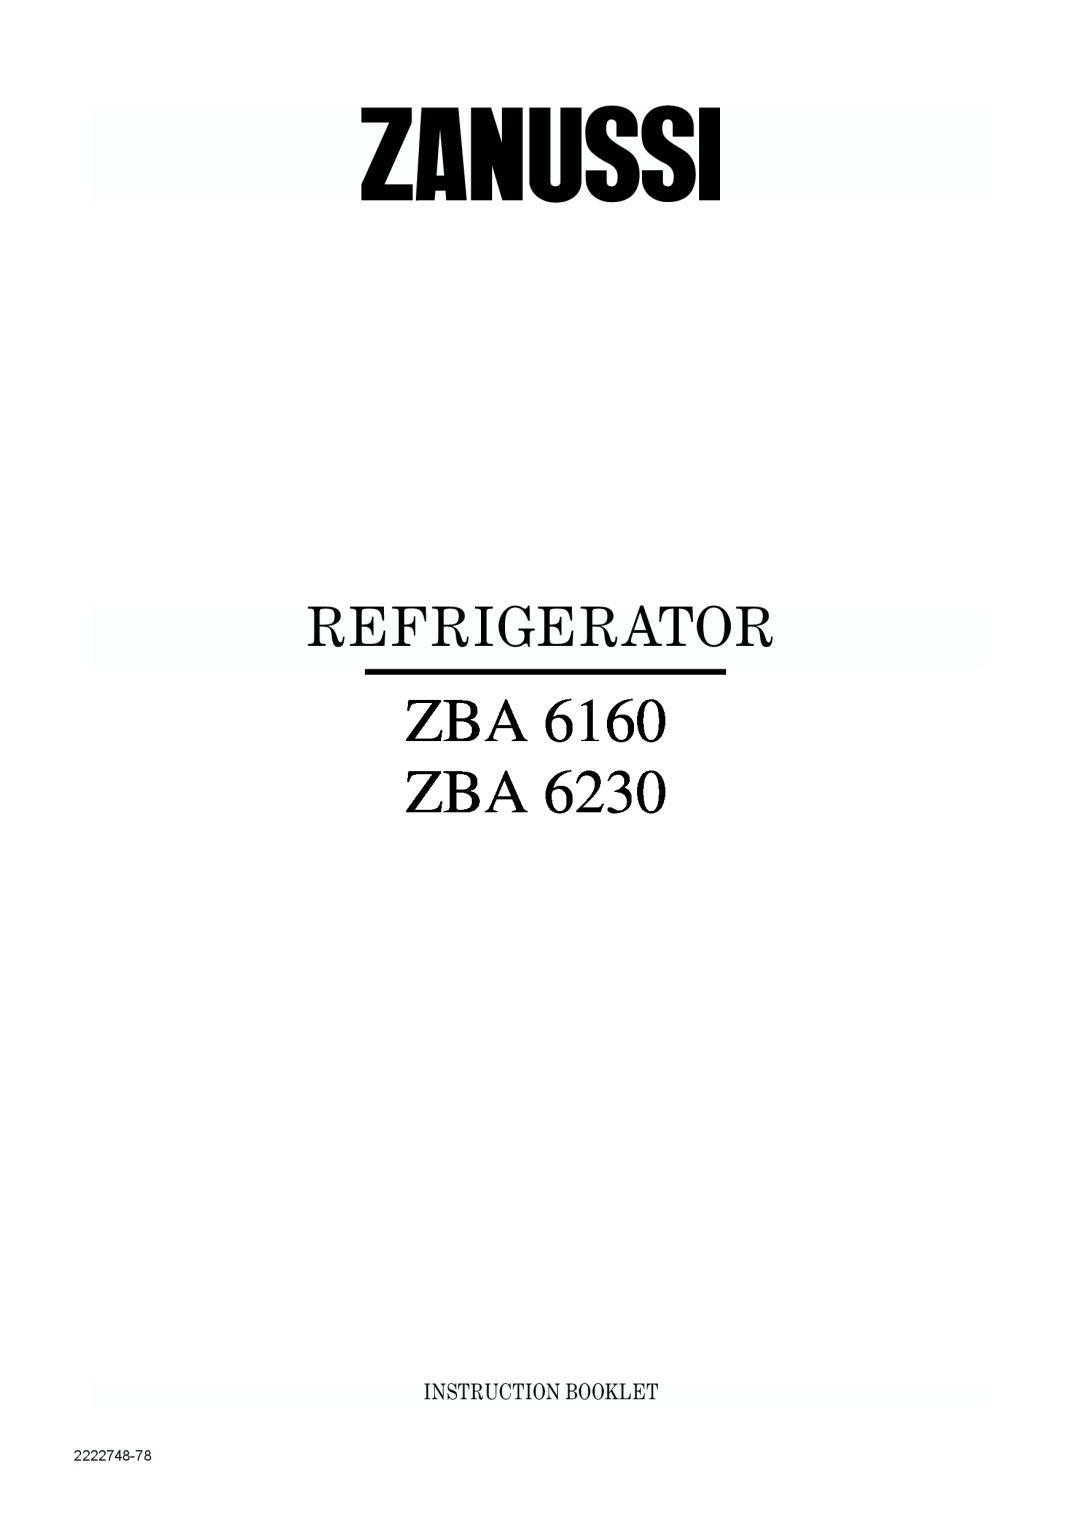 Zanussi ZBA 6230, ZBA 6160 manual Zba Zba, Refrigerator, Instruction Booklet, 2222748-78 